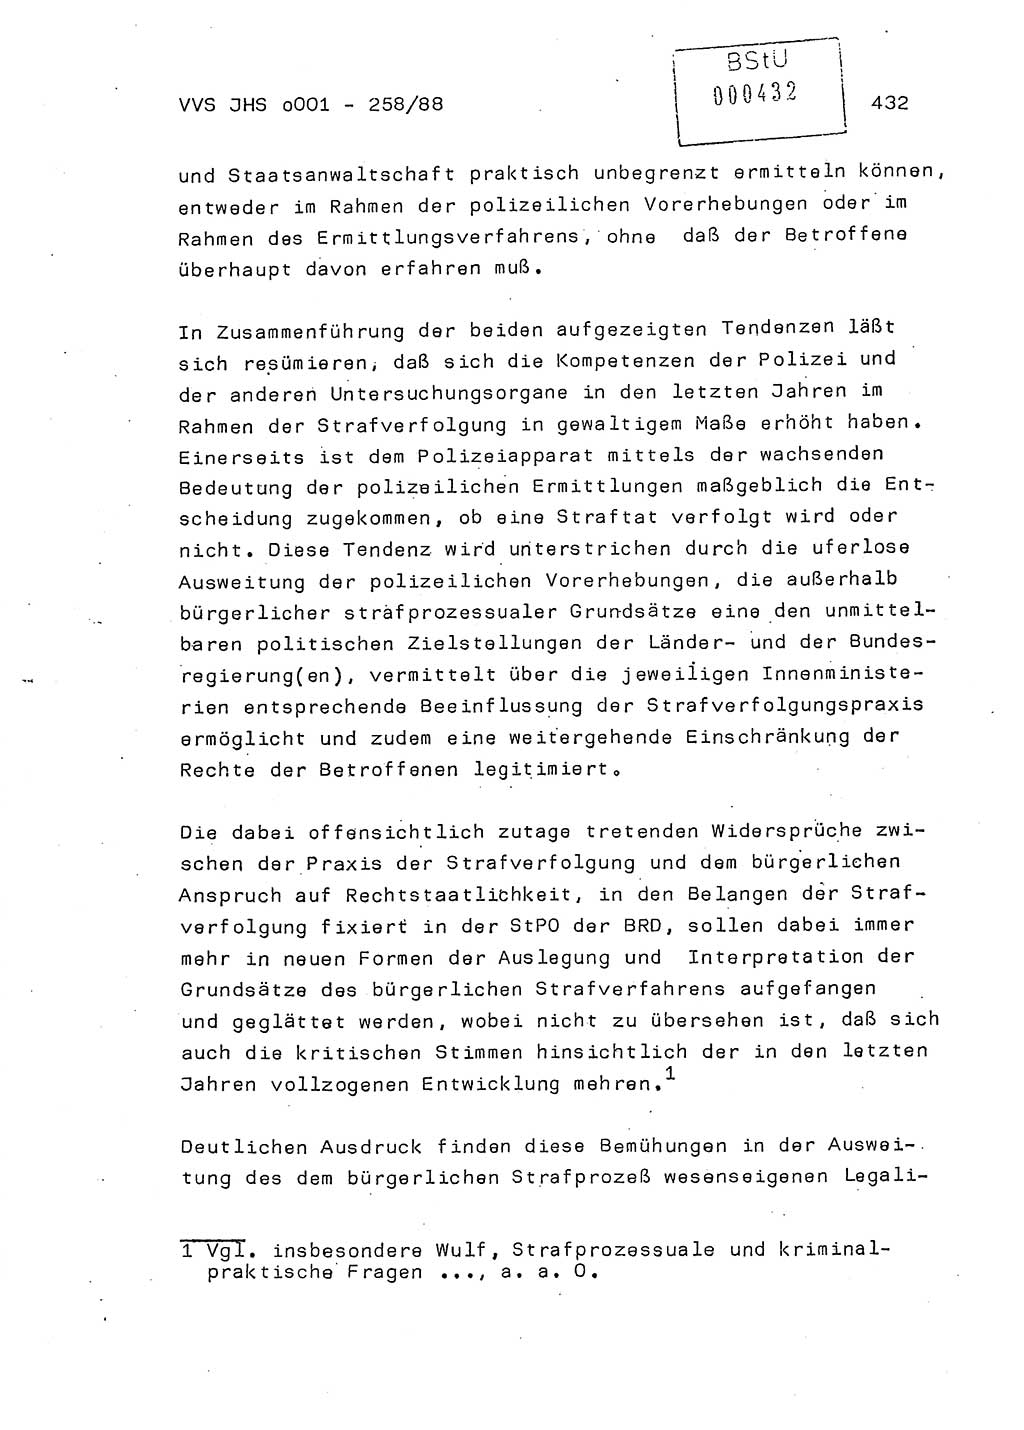 Dissertation, Oberleutnant Uwe Kärsten (JHS), Hauptmann Dr. Joachim Henkel (JHS), Oberstleutnant Werner Mählitz (Leiter der Abt. Ⅸ BV Rostock), Oberstleutnant Jürgen Tröge (HA Ⅸ/AKG), Oberstleutnant Winfried Ziegler (HA Ⅸ/9), Major Wolf-Rüdiger Wurzler (JHS), Ministerium für Staatssicherheit (MfS) [Deutsche Demokratische Republik (DDR)], Juristische Hochschule (JHS), Vertrauliche Verschlußsache (VVS) o001-258/88, Potsdam 1988, Seite 431 (Diss. MfS DDR JHS VVS o001-258/88 1988, S. 431)